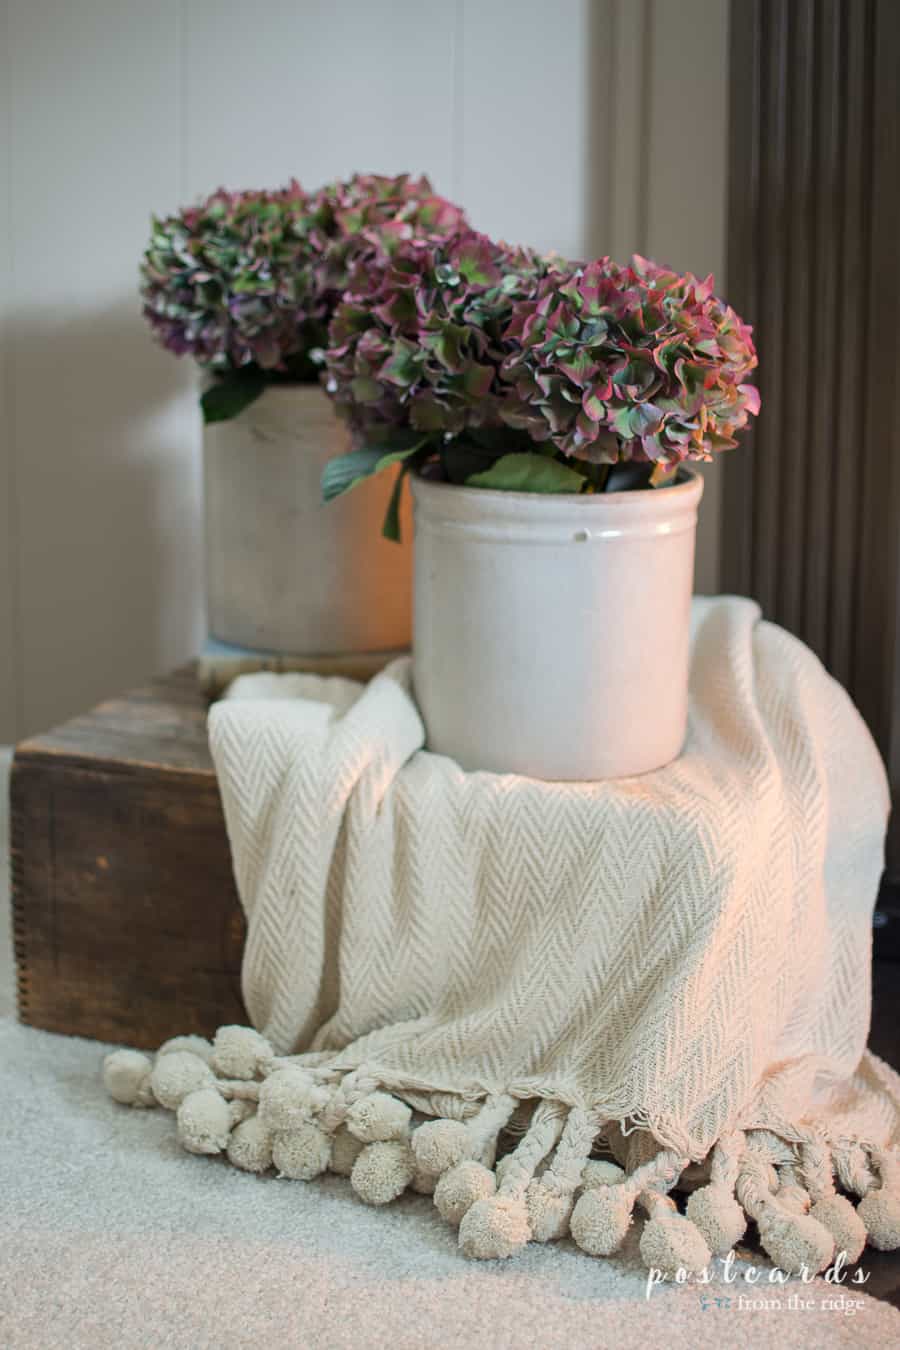 cozy throw blanket with pom poms and hydrangeas